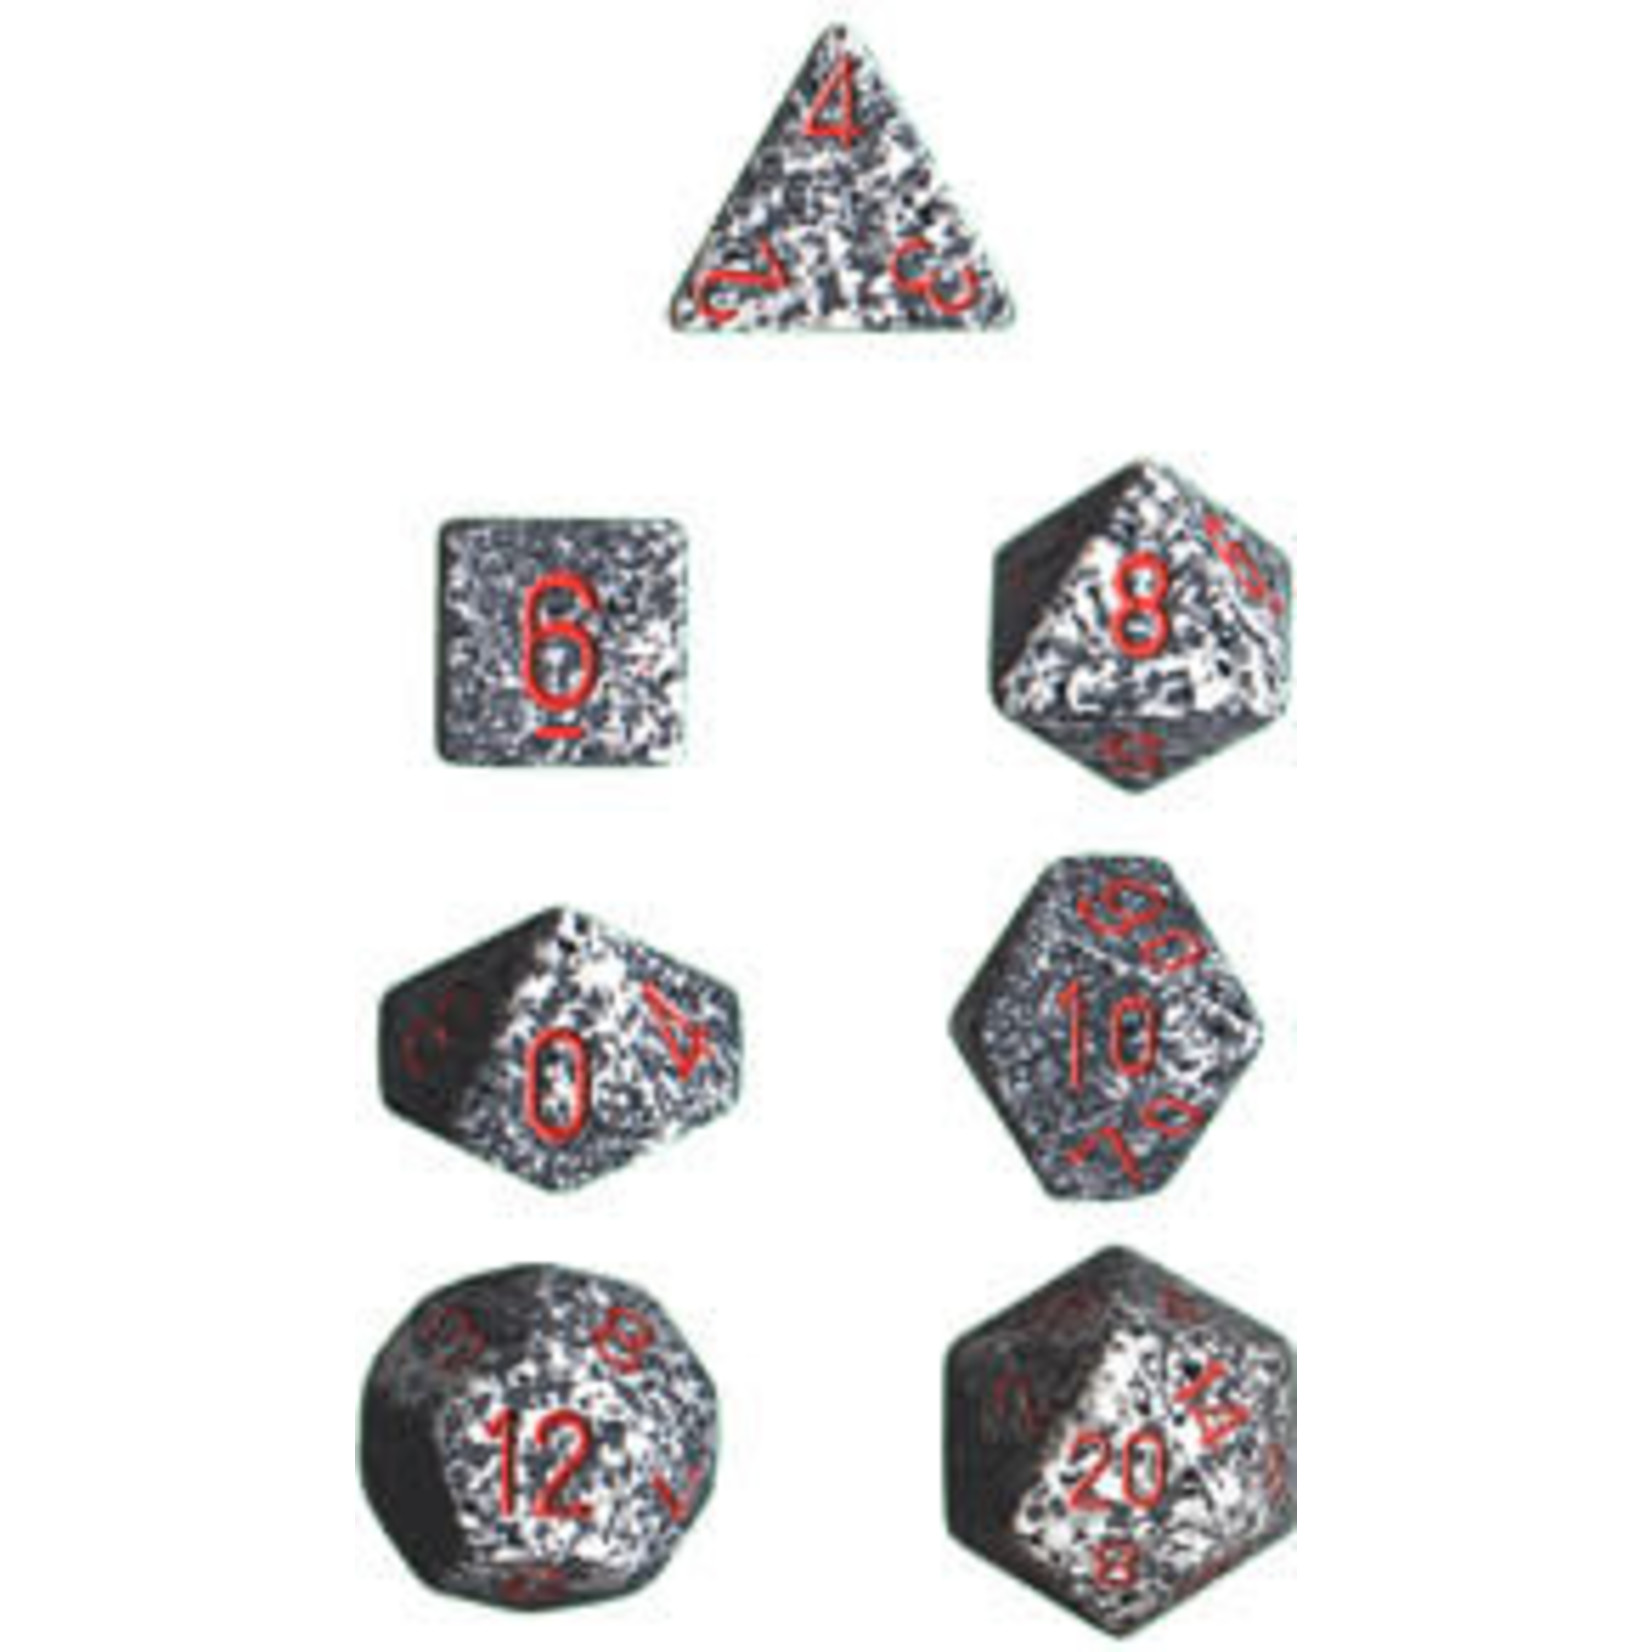 Chessex Speckled Granite 7 die set